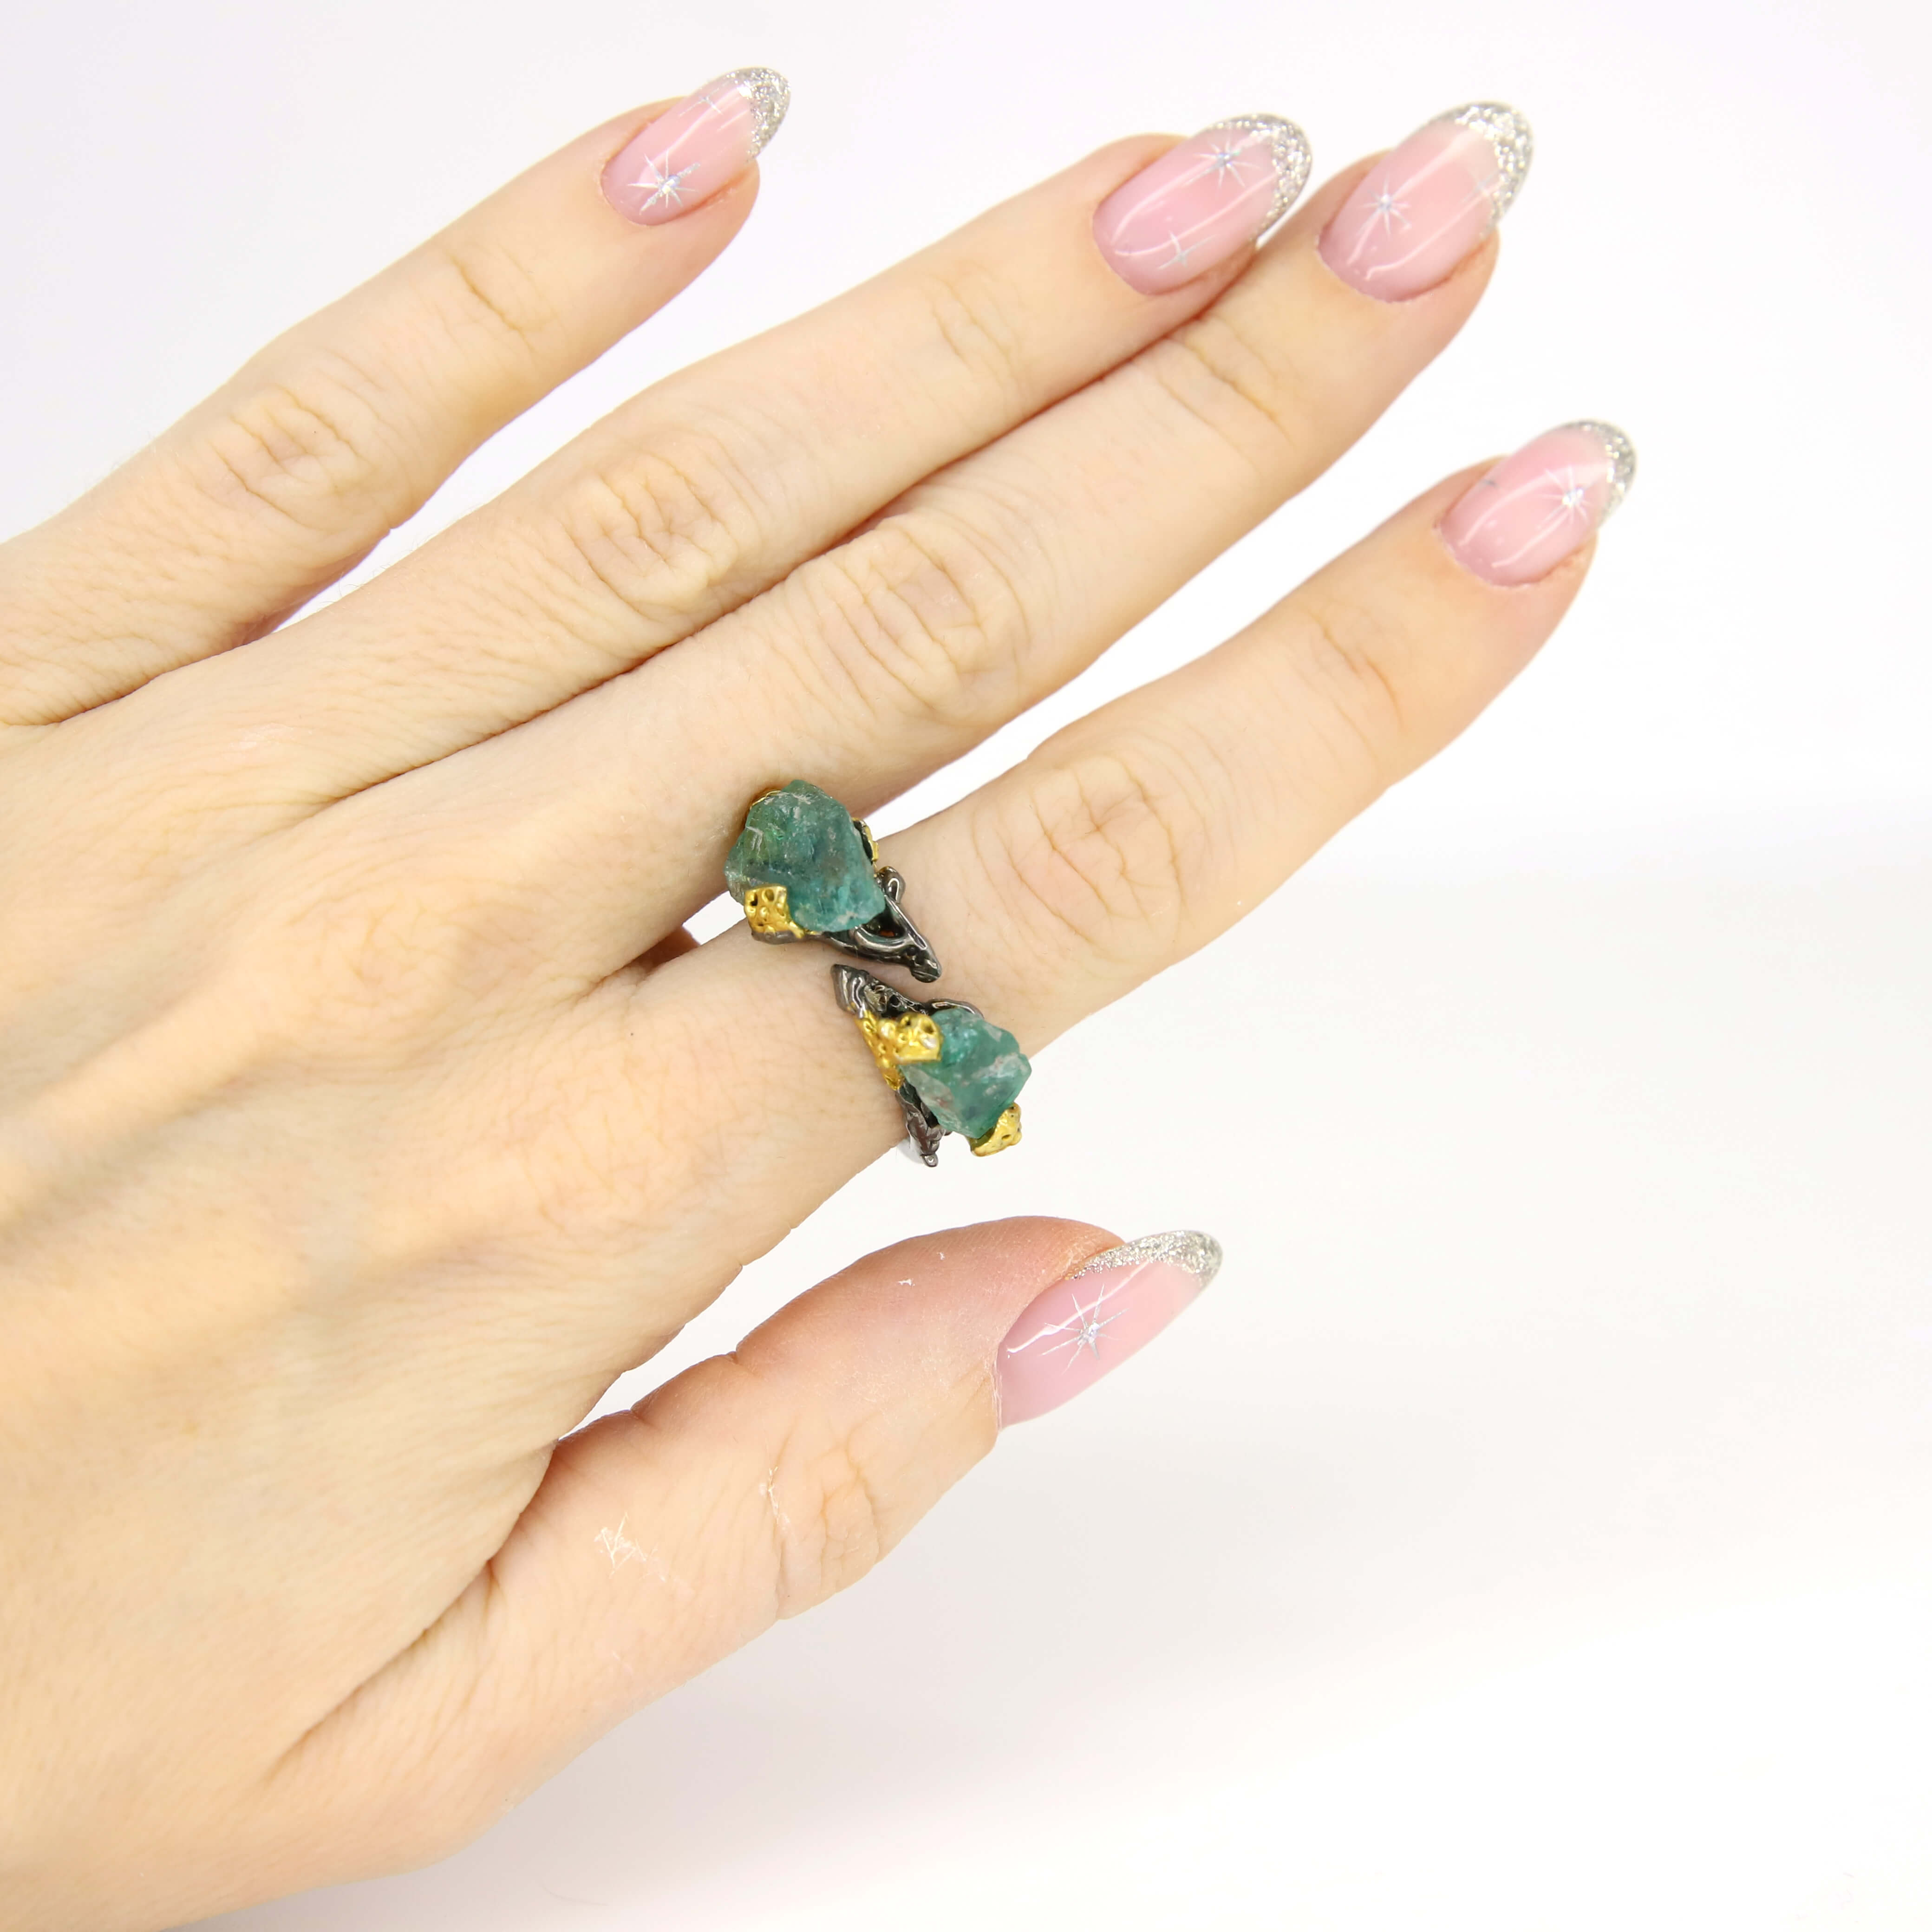 Кольцо 925 с апатитами размер 17,5, цвет Зеленый, фото 1